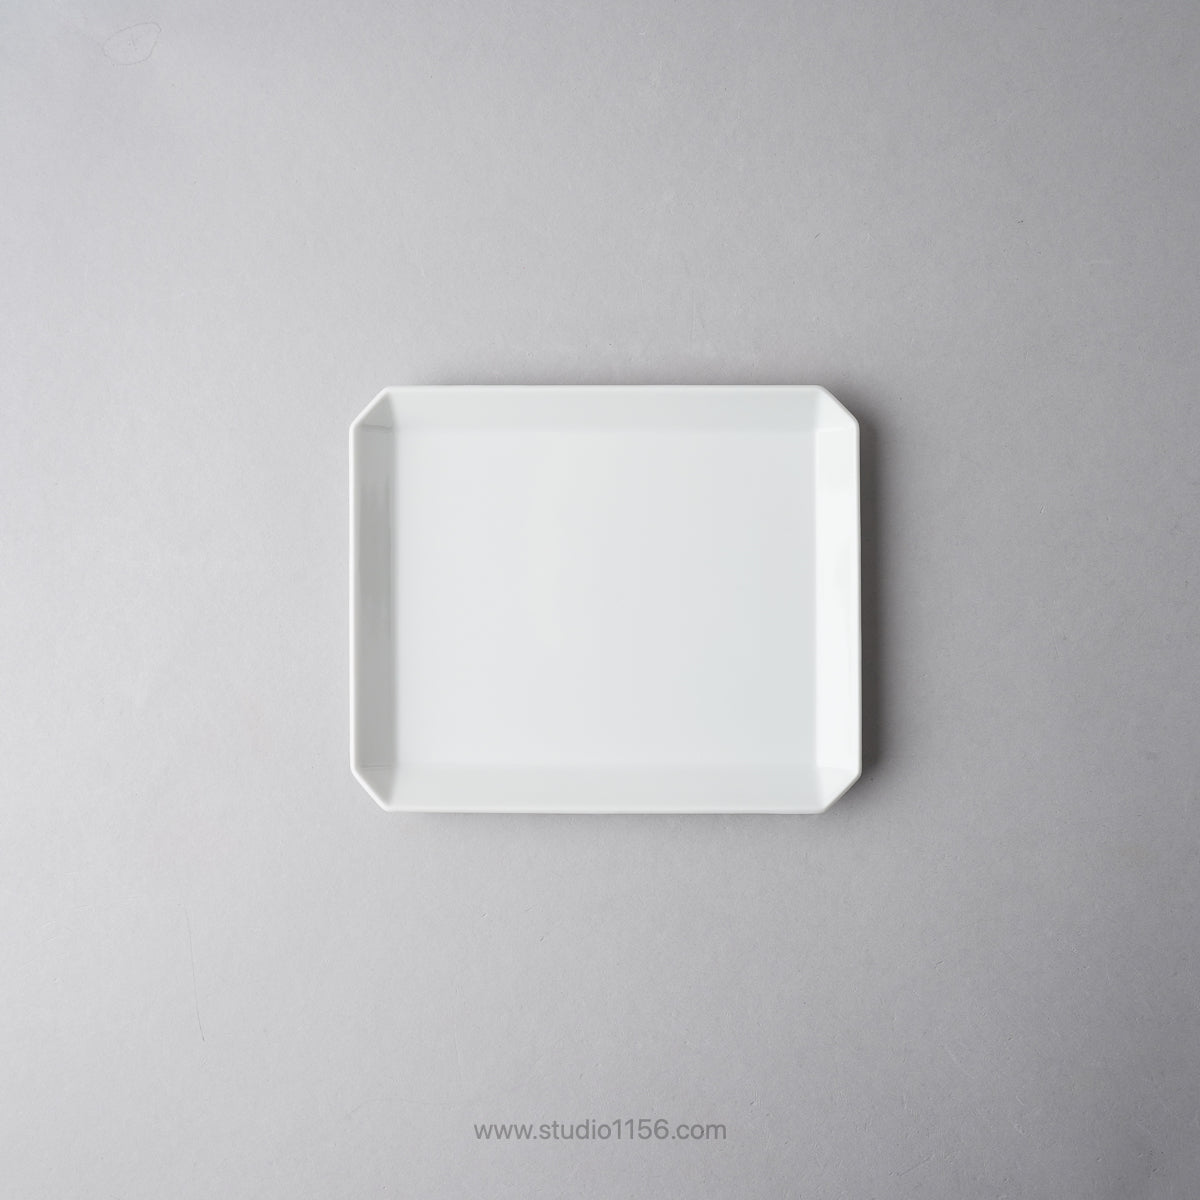 有田焼 スクエアプレート プレーン ホワイト / TY Square Plate Plain White